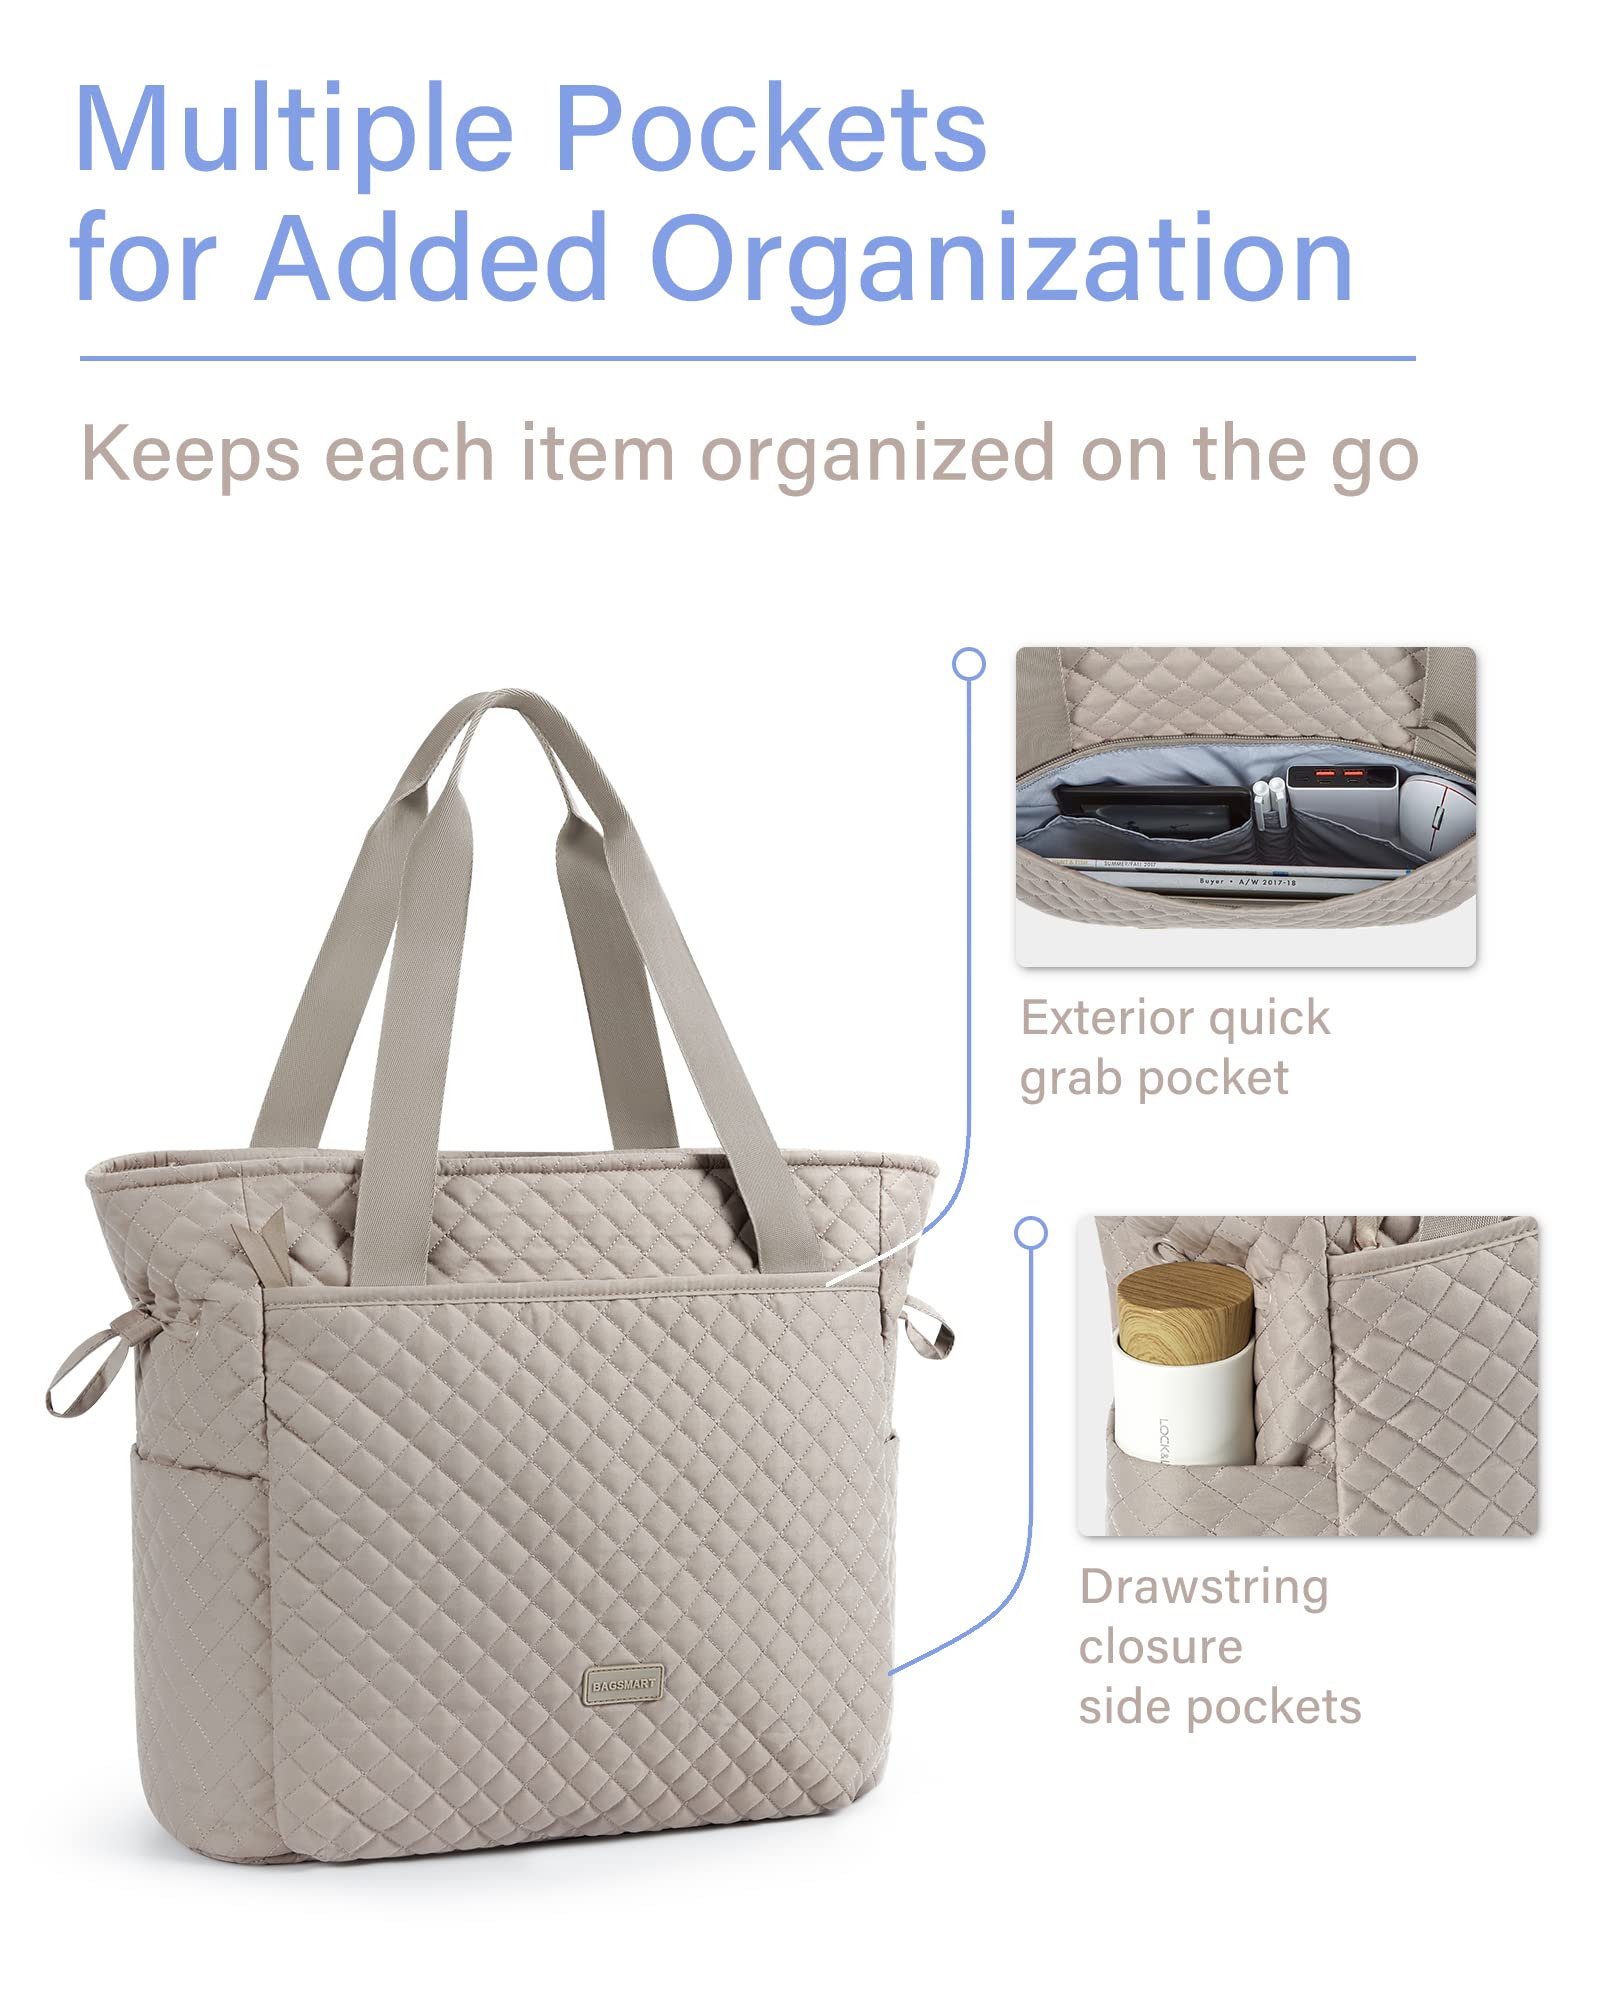 BAGSMART Quilted Tote Bag, Top Handle Handbags for Women, Shoulder Bag, 25L Large Hobo Bag for Work, School, Travel